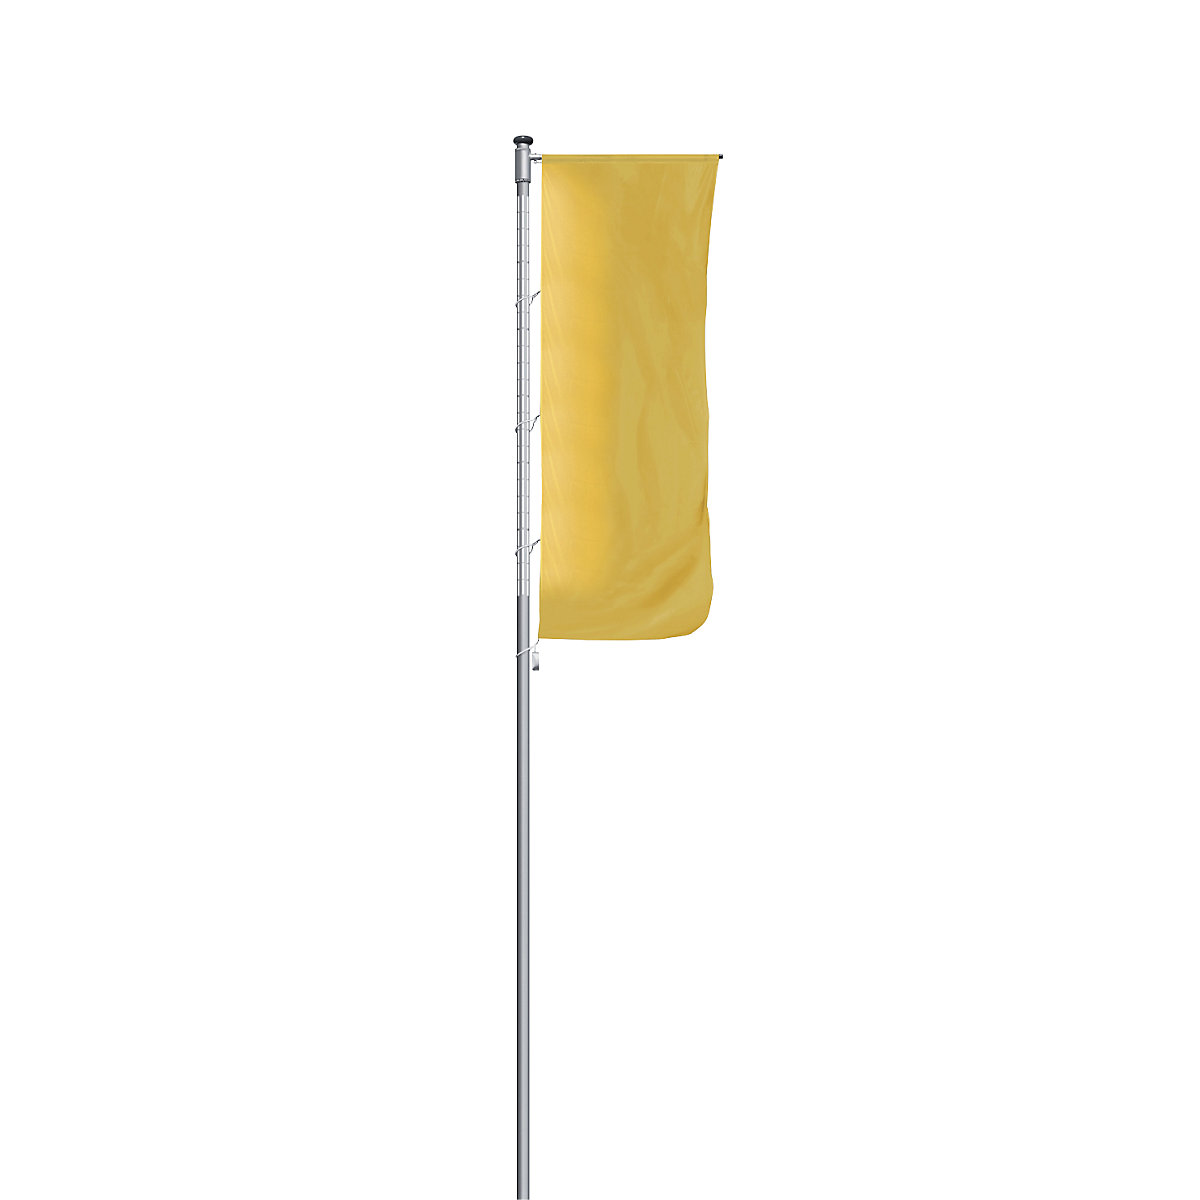 Mannus – Catarg din aluminiu pentru steaguri, iluminat, cu braț, înălțime de la podea 7 m